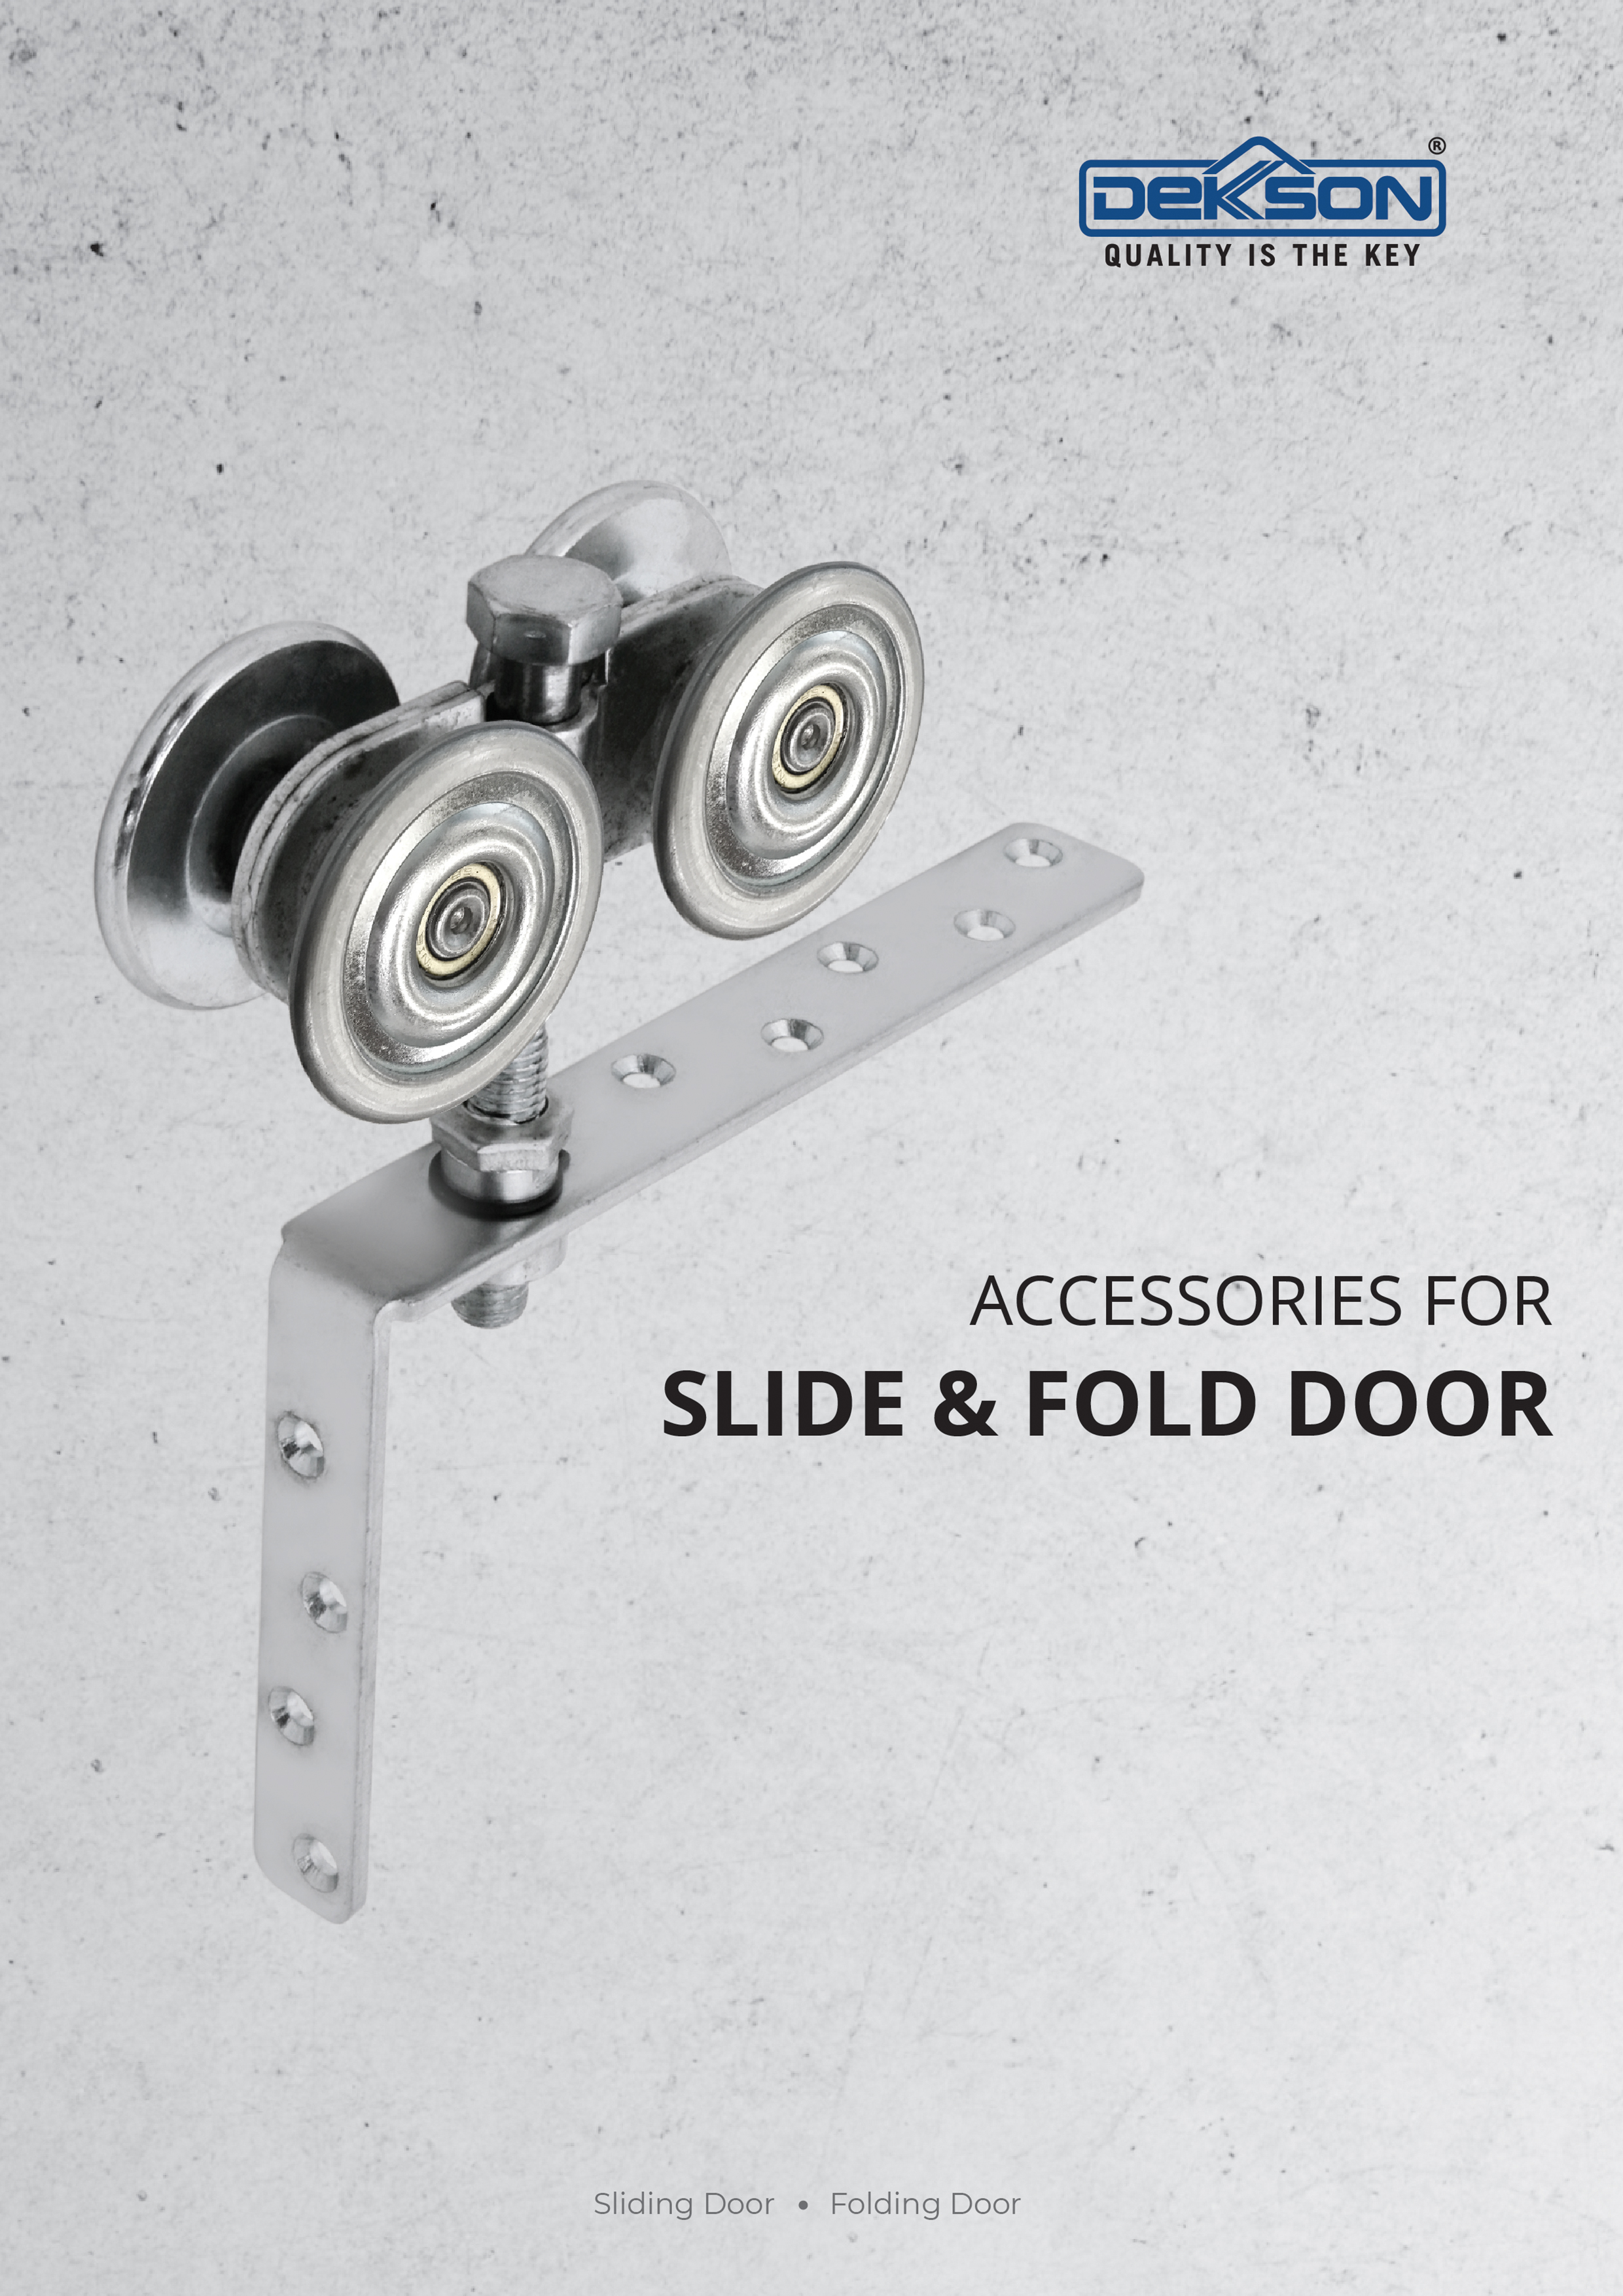 Accessories for Slide & Fold Door